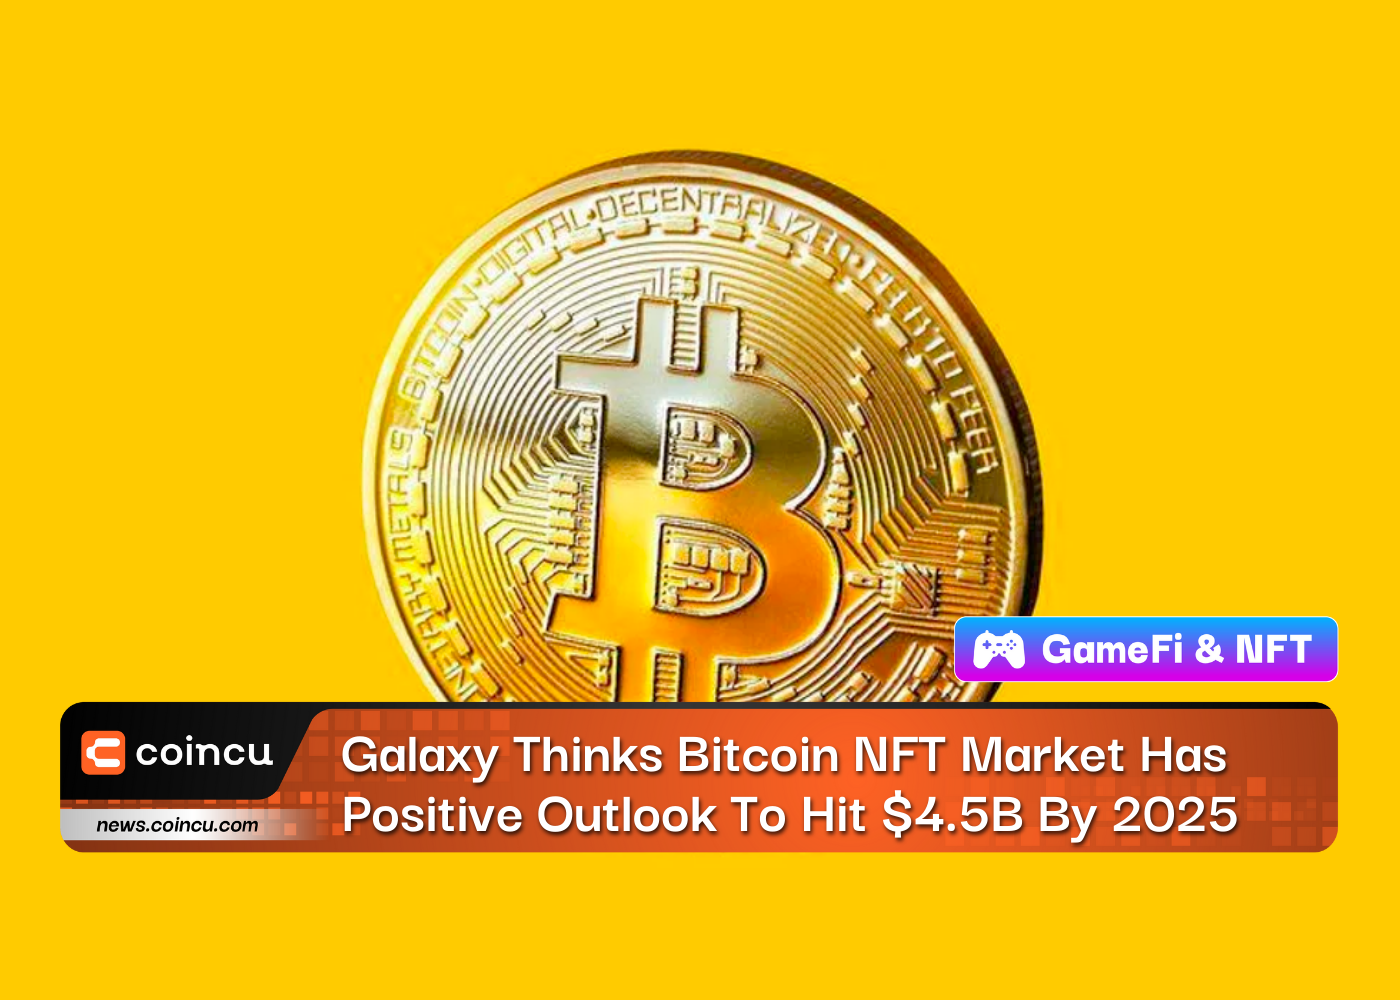 Galaxy cree que el mercado NFT de Bitcoin tiene perspectivas positivas de alcanzar los 4.5 millones de dólares en 2025